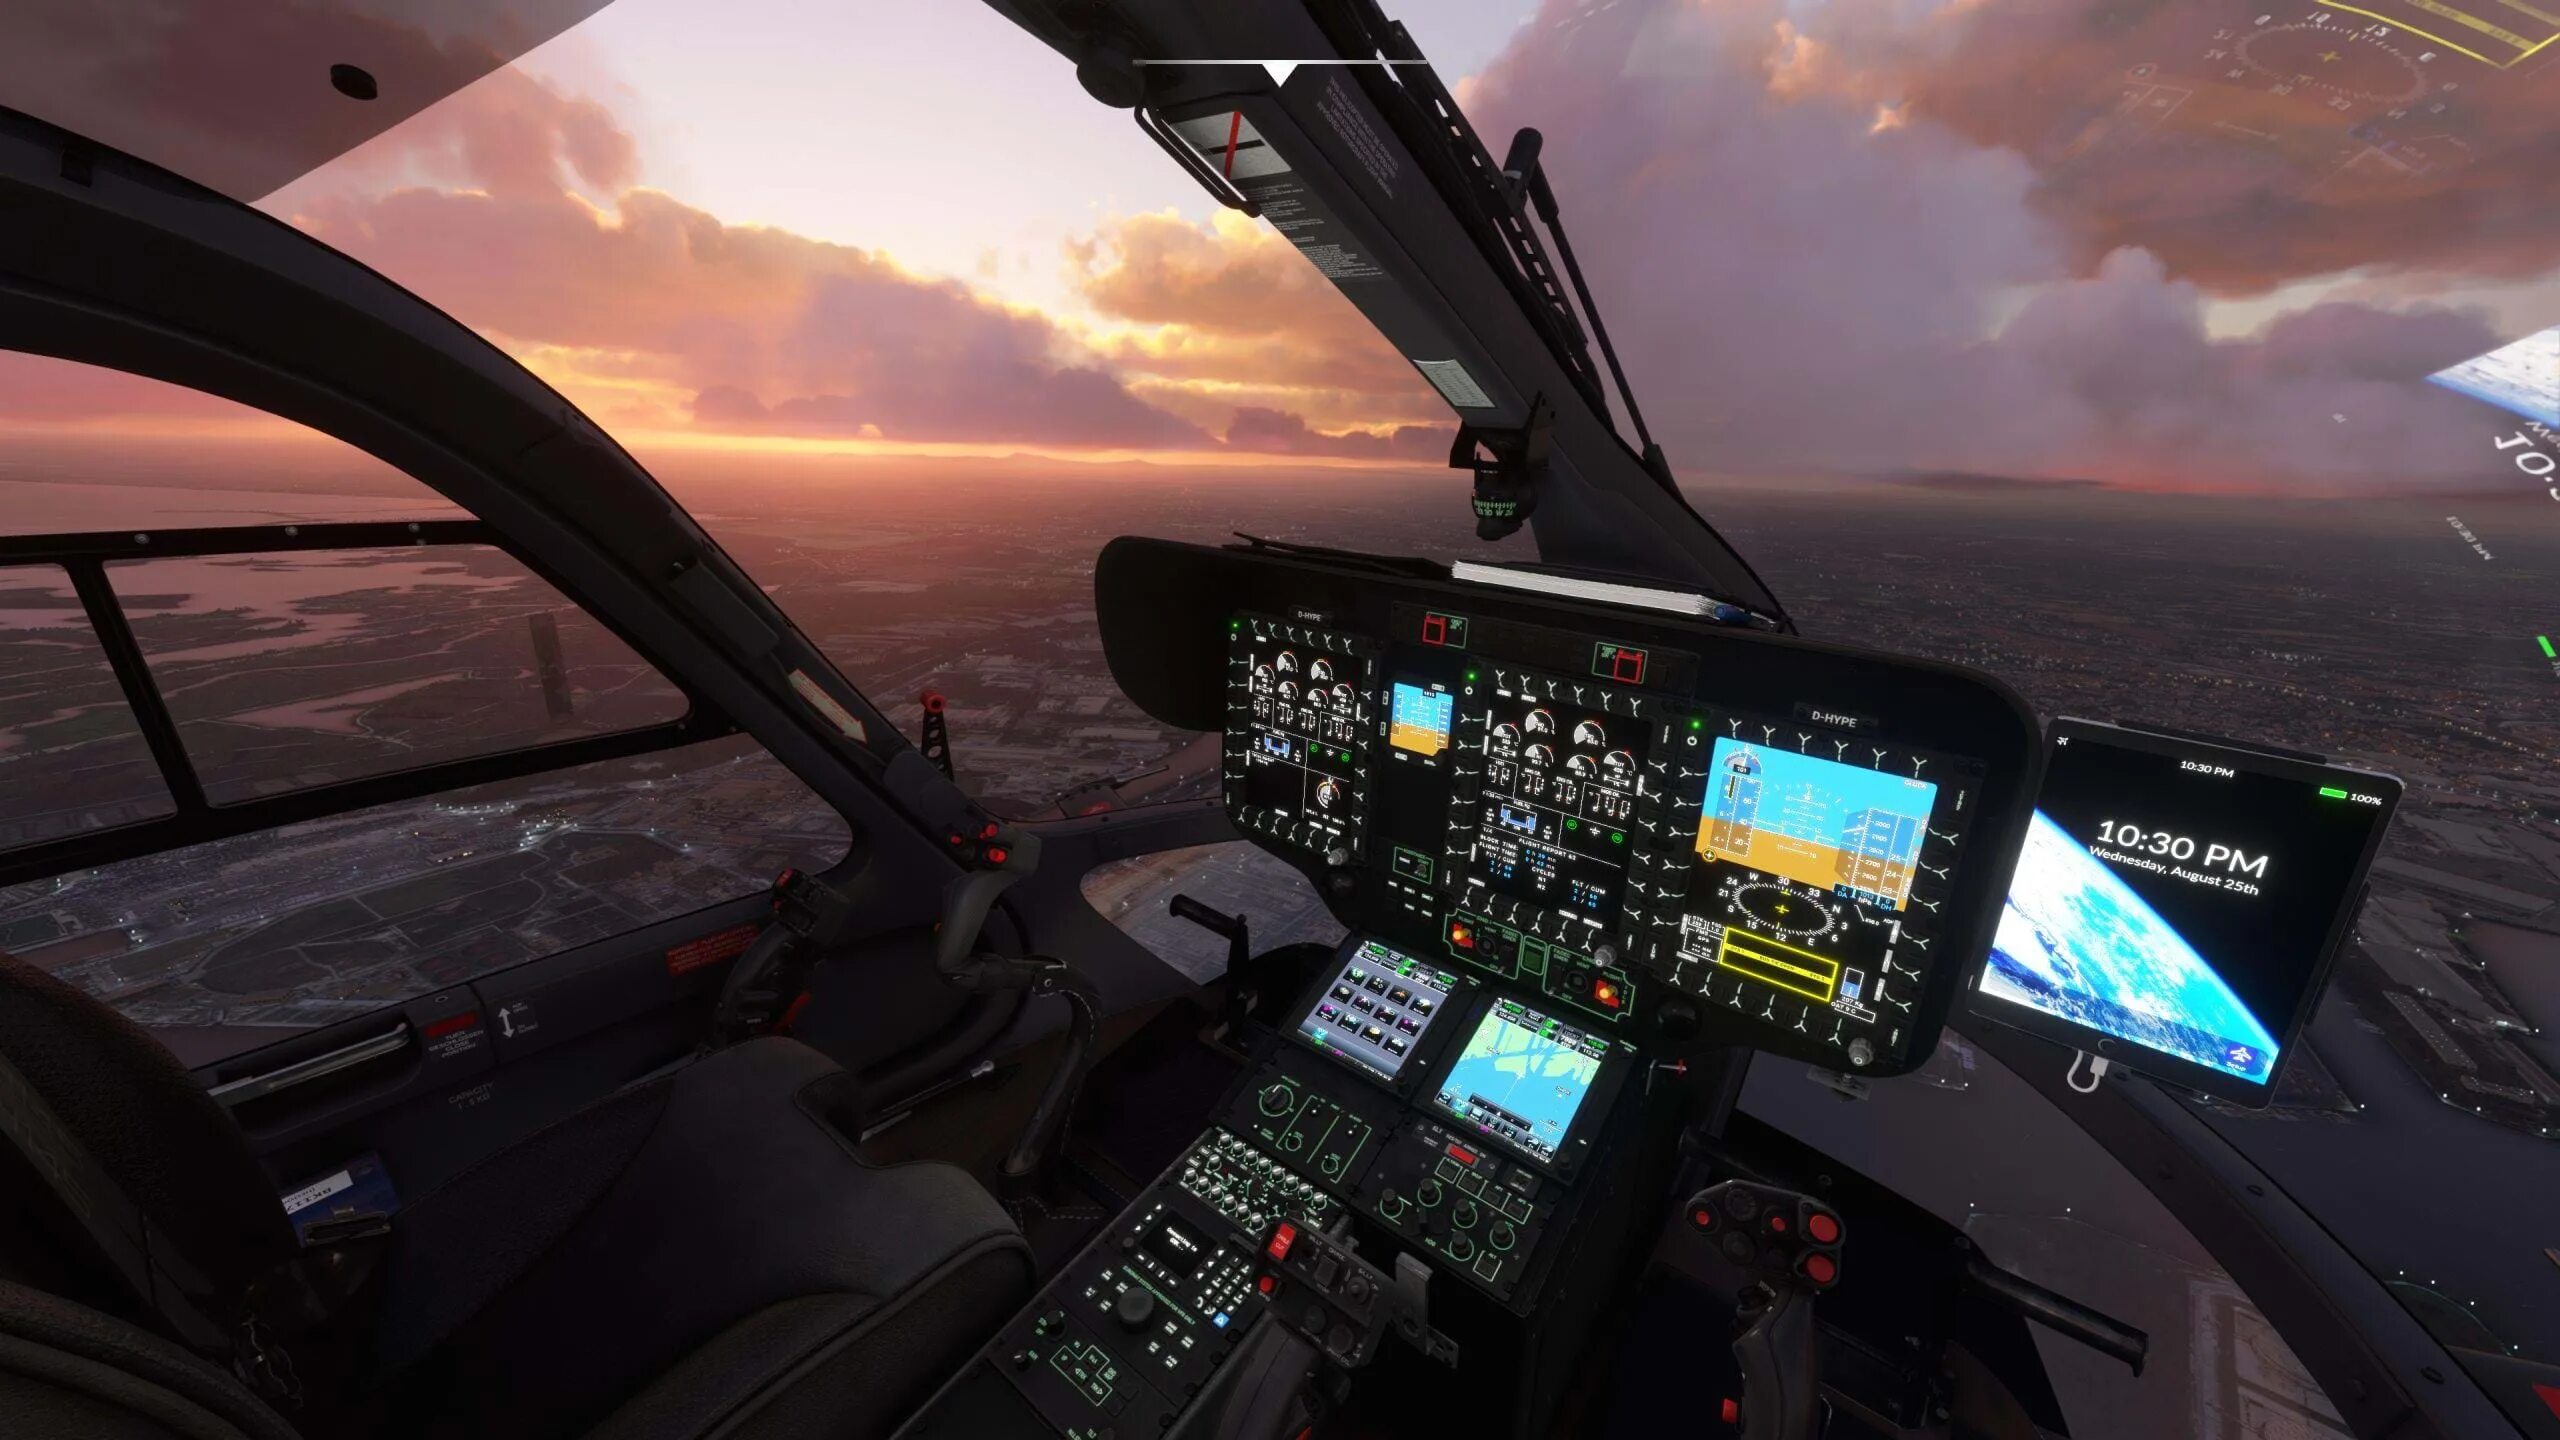 Майкрософт симулятор 2020 купить. H145 вертолет кабина. Microsoft Flight Simulator 2020 Helicopter. Airbus h145 mfs2020. Авиасимуляторы 3д с кабиной.